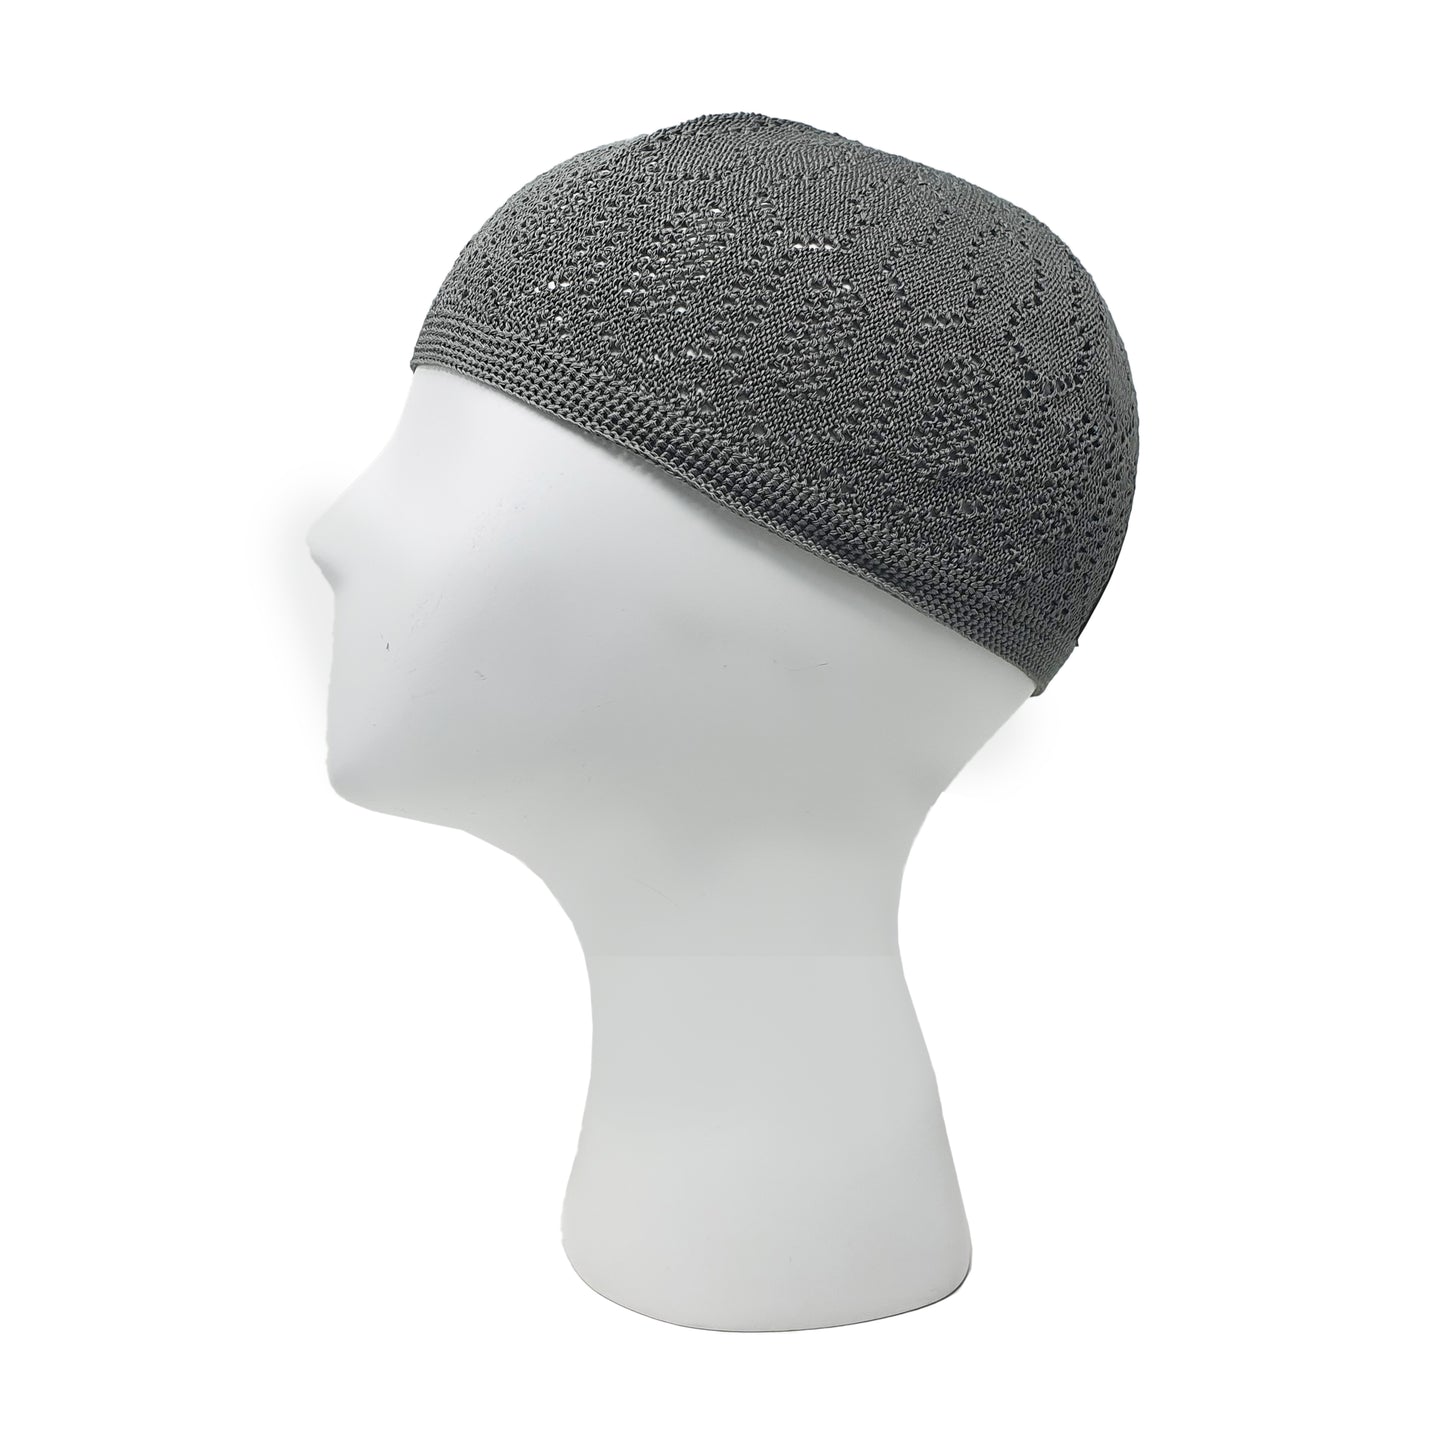 grey Mosque hat